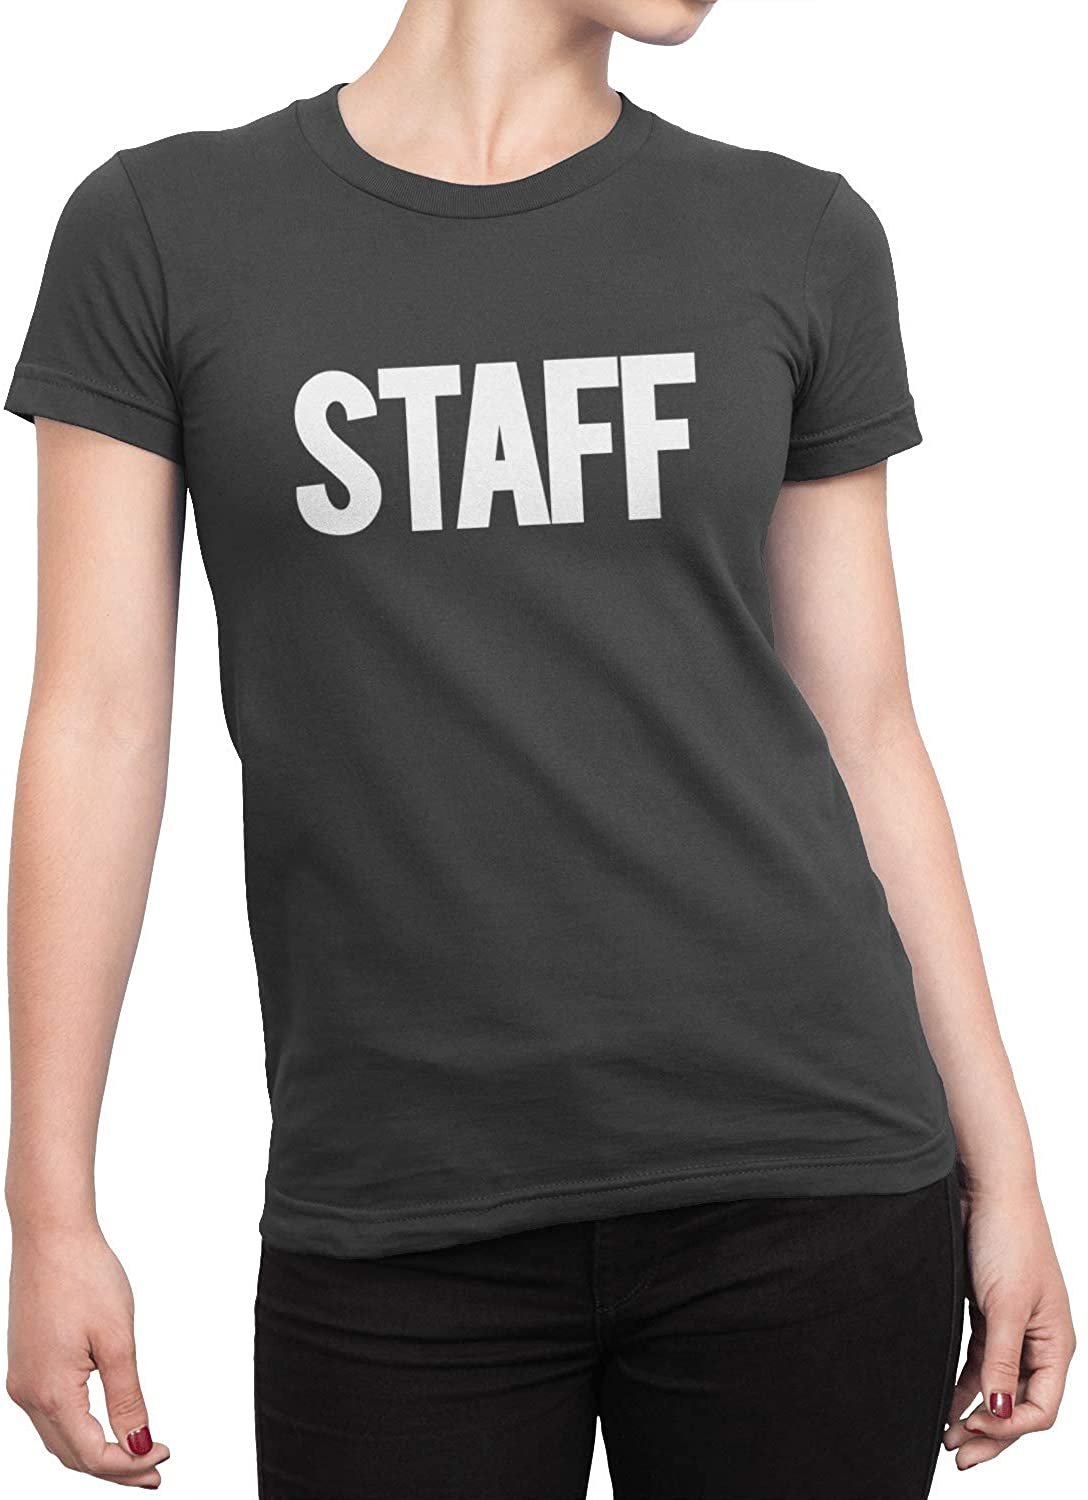 Staff Damen Kurzarm T-Shirt (Solid Design, Charcoal)